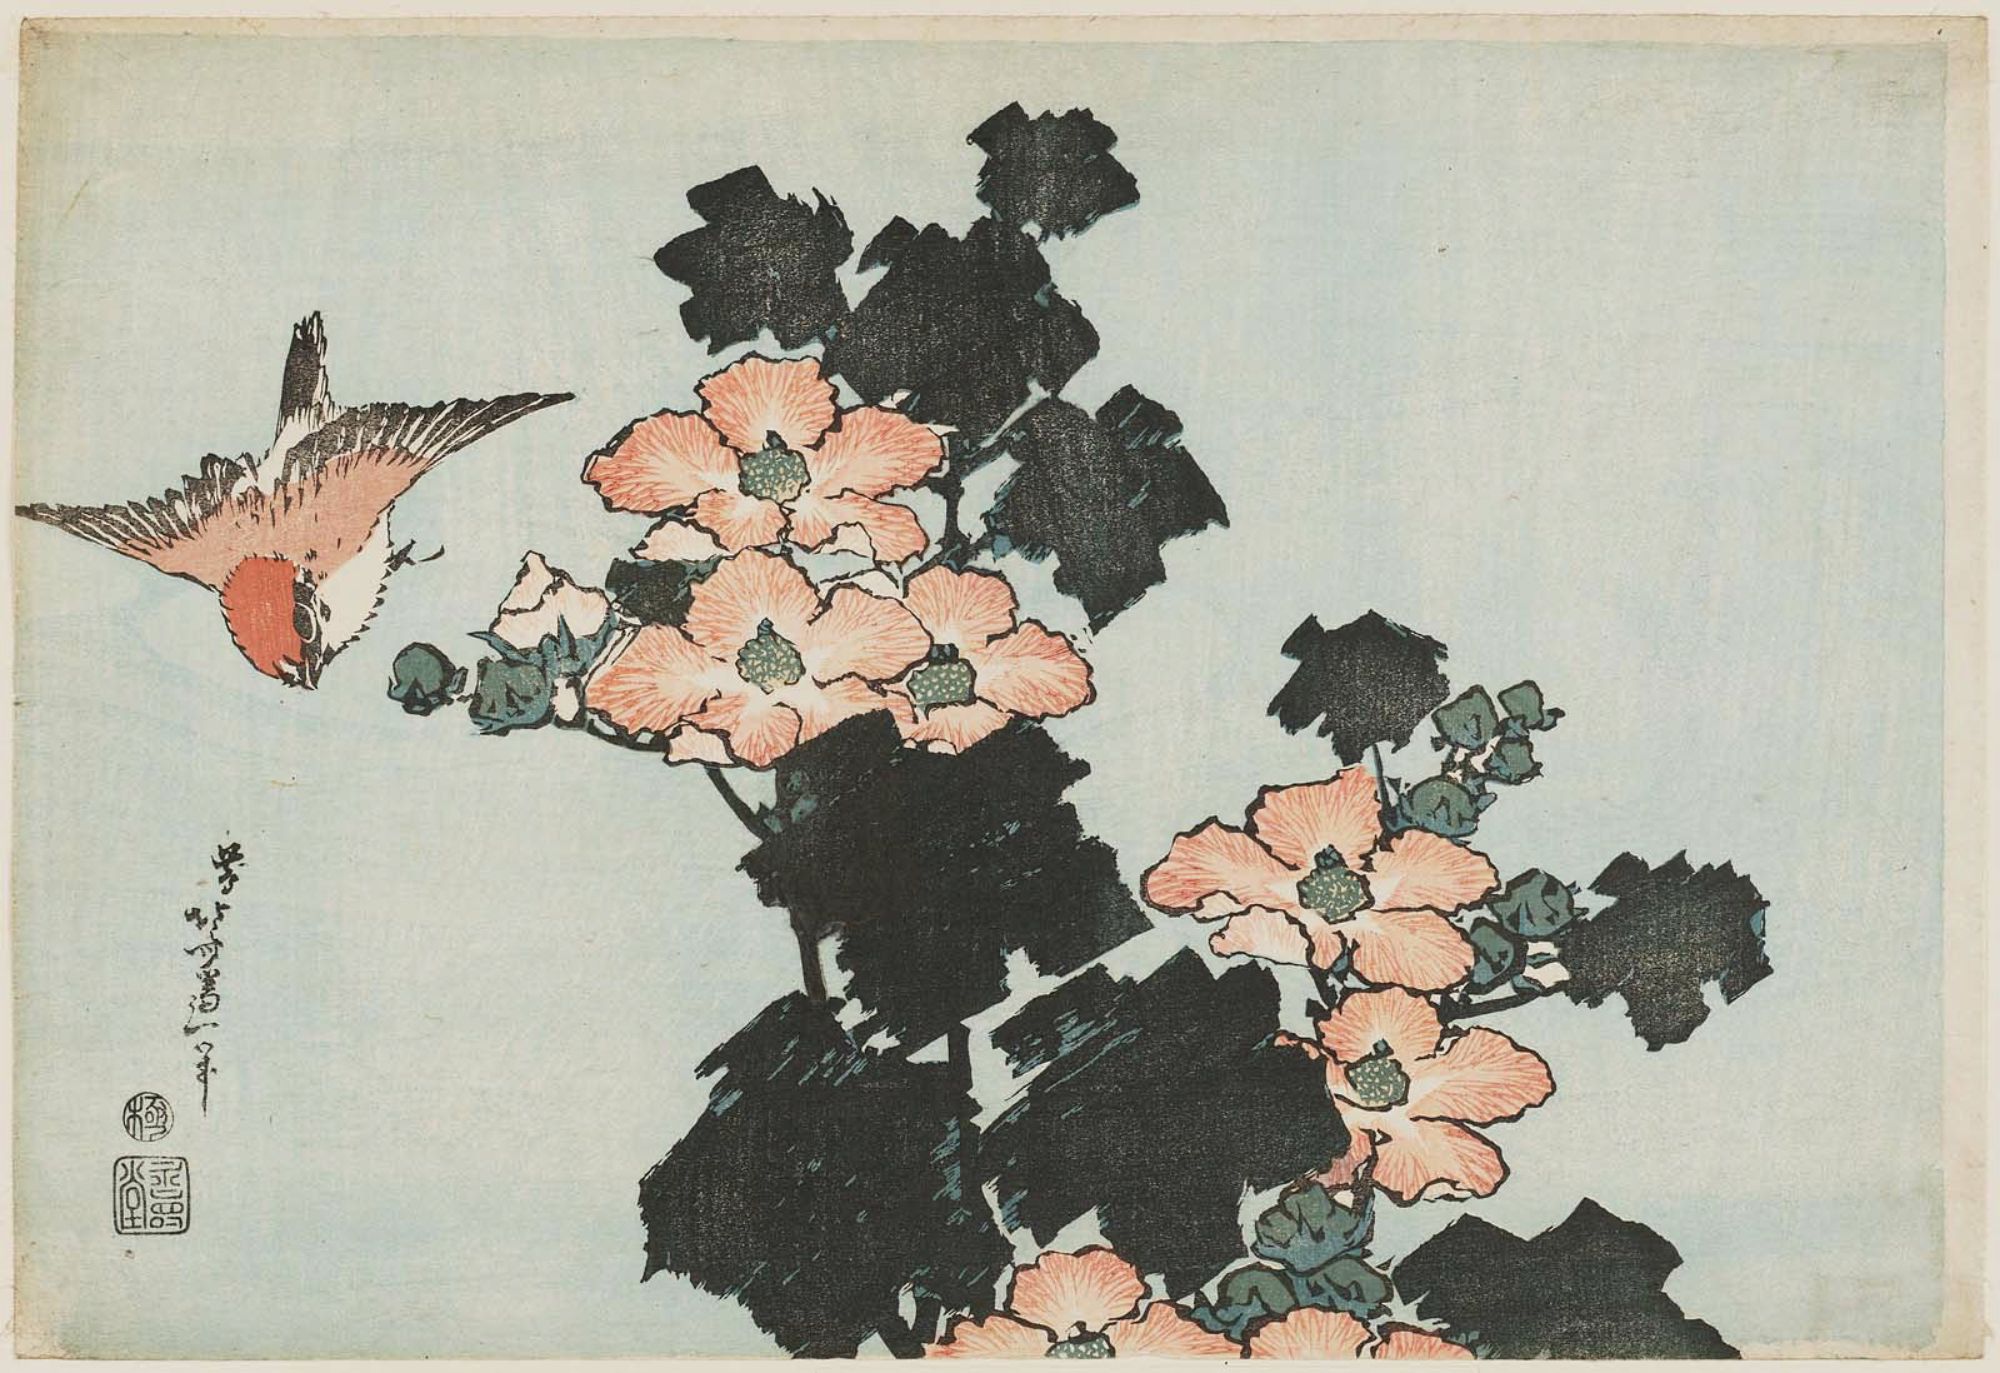 葛飾北斎: Hibiscus and Sparrow, from an untitled series known as 